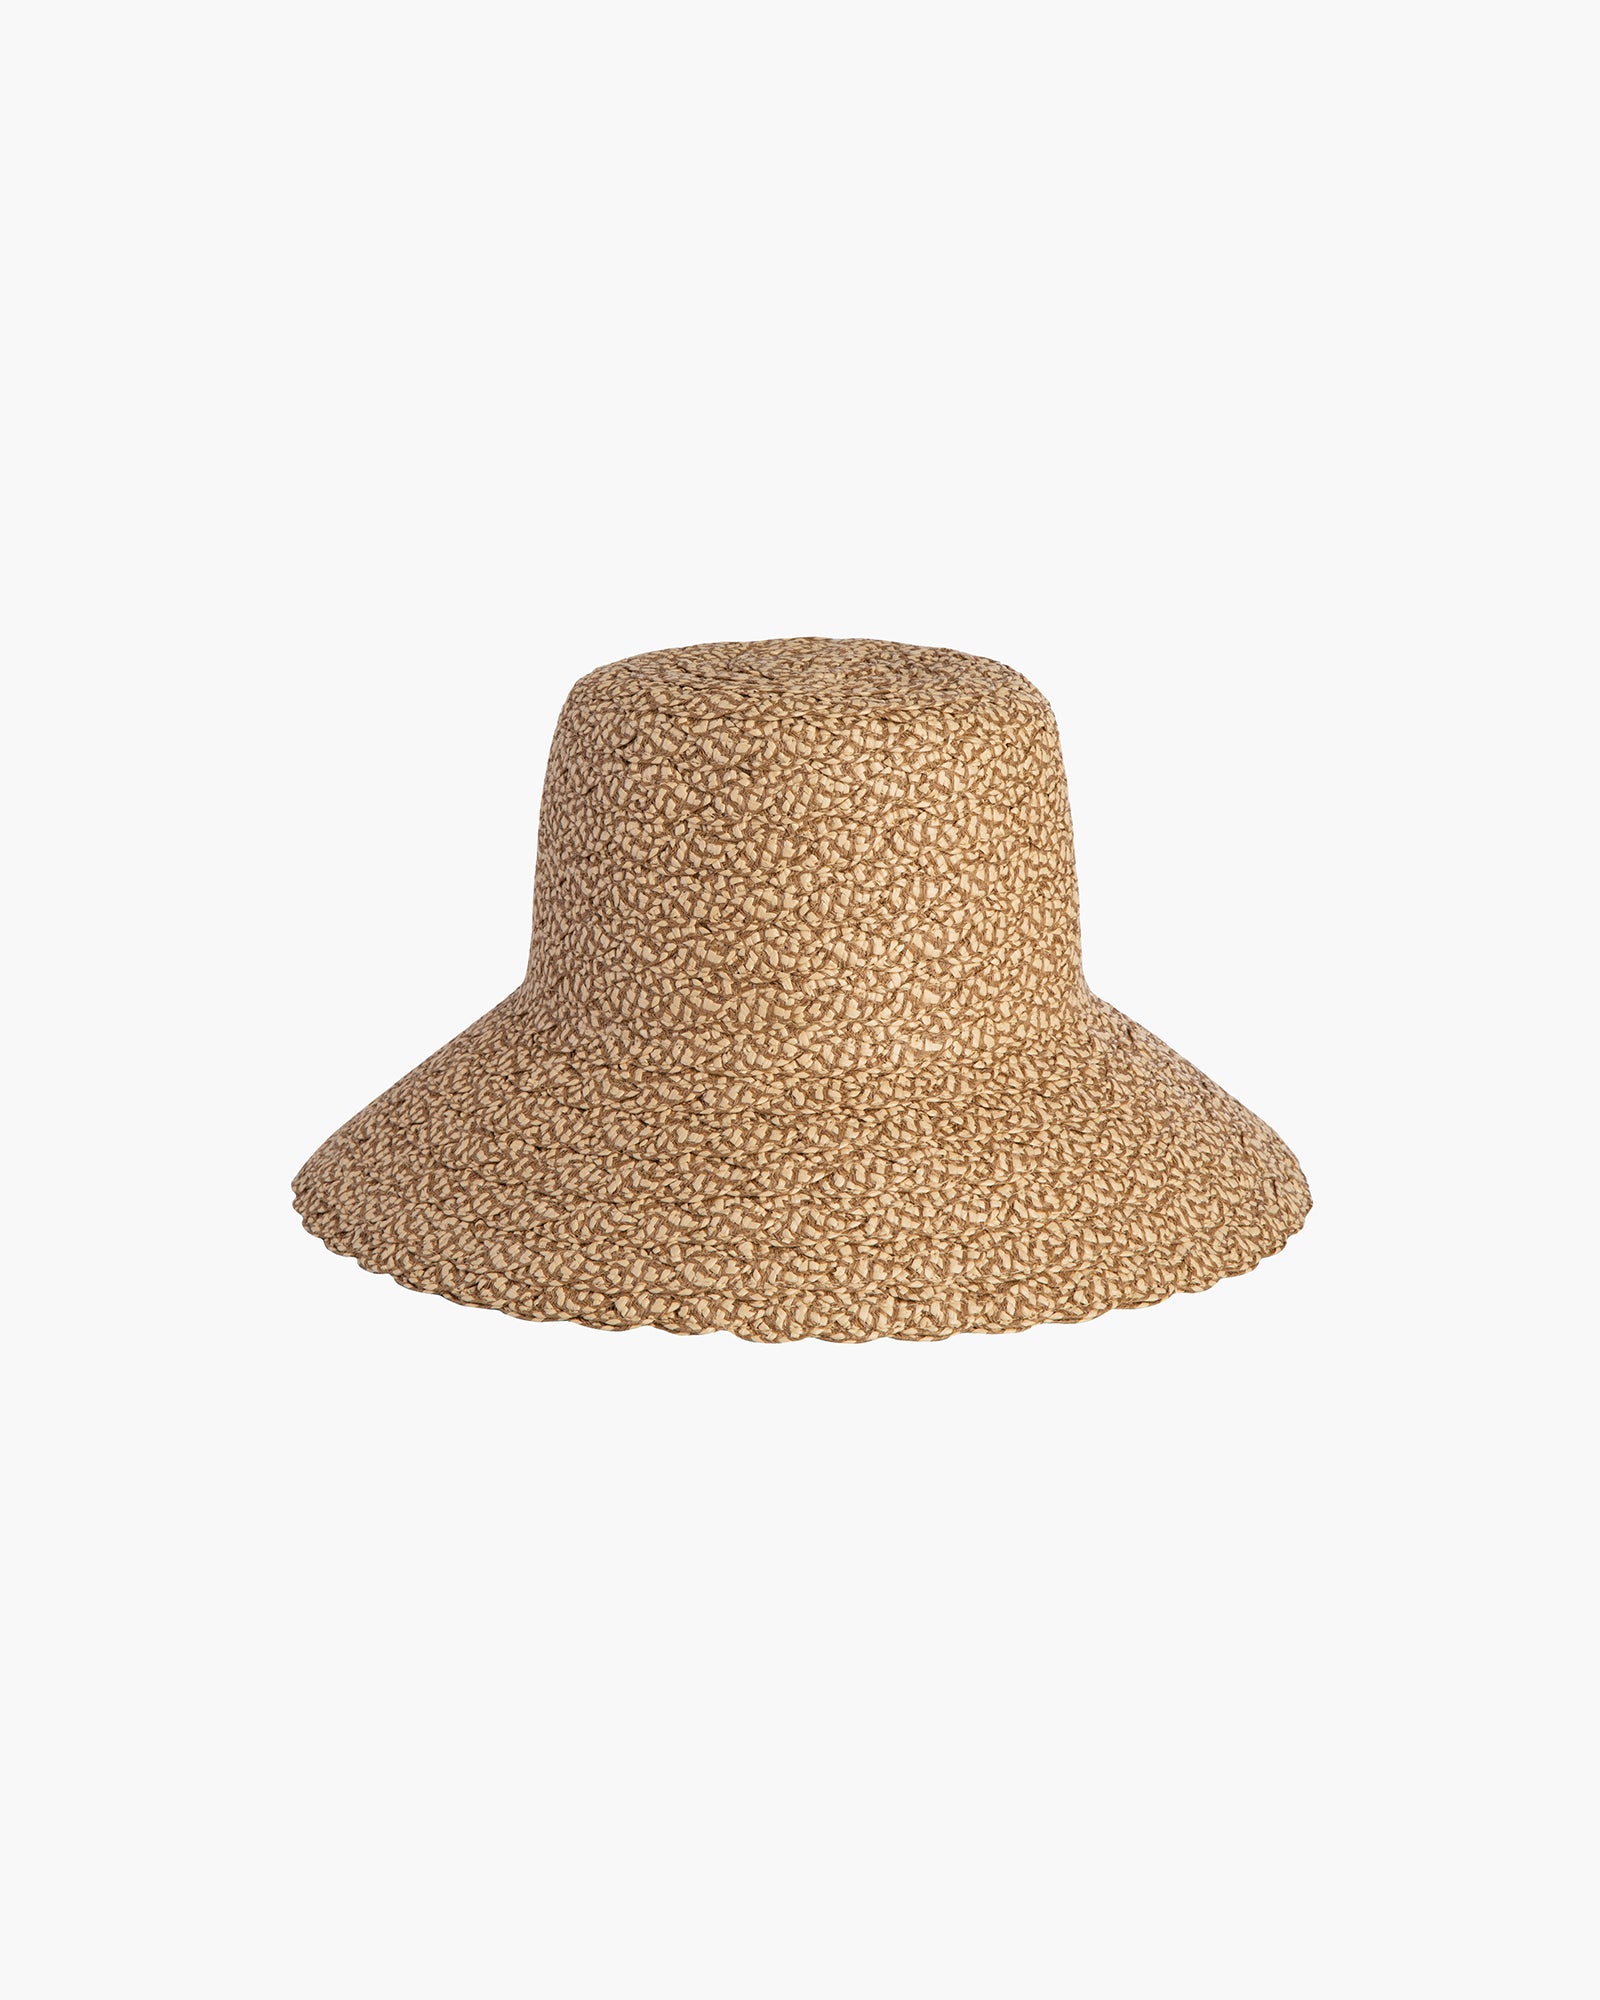 Quilty Bucket Hat, Women's Bucket Hats, Eric Javits